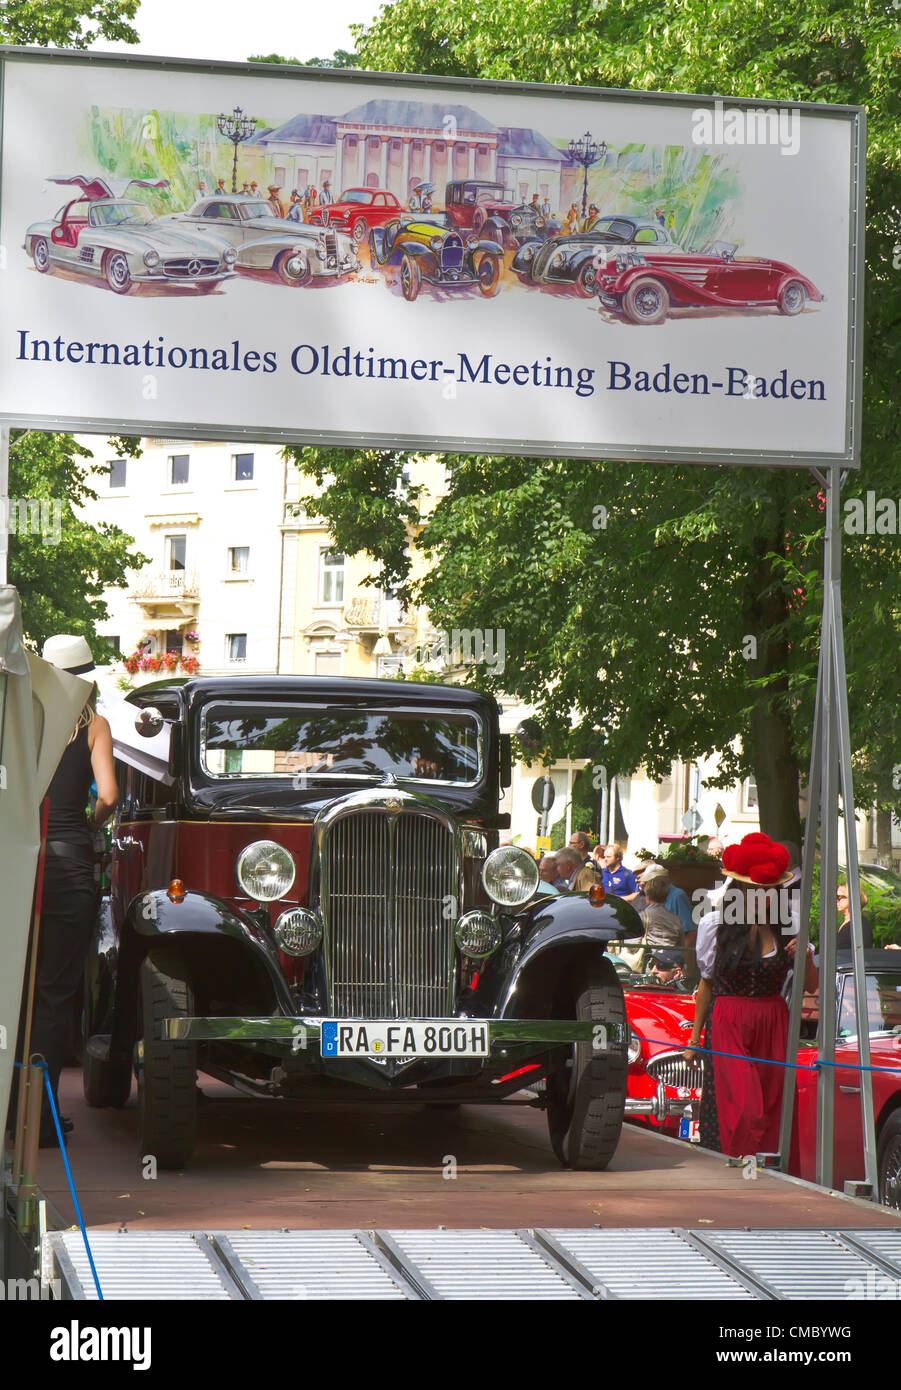 Baden-Baden-13. Juli 2012: Internationale Fachmesse für alte Autos "Internationales Oldtimer-Meeting Baden-Baden" Registrierung. Europa. Deutschland. Stockfoto